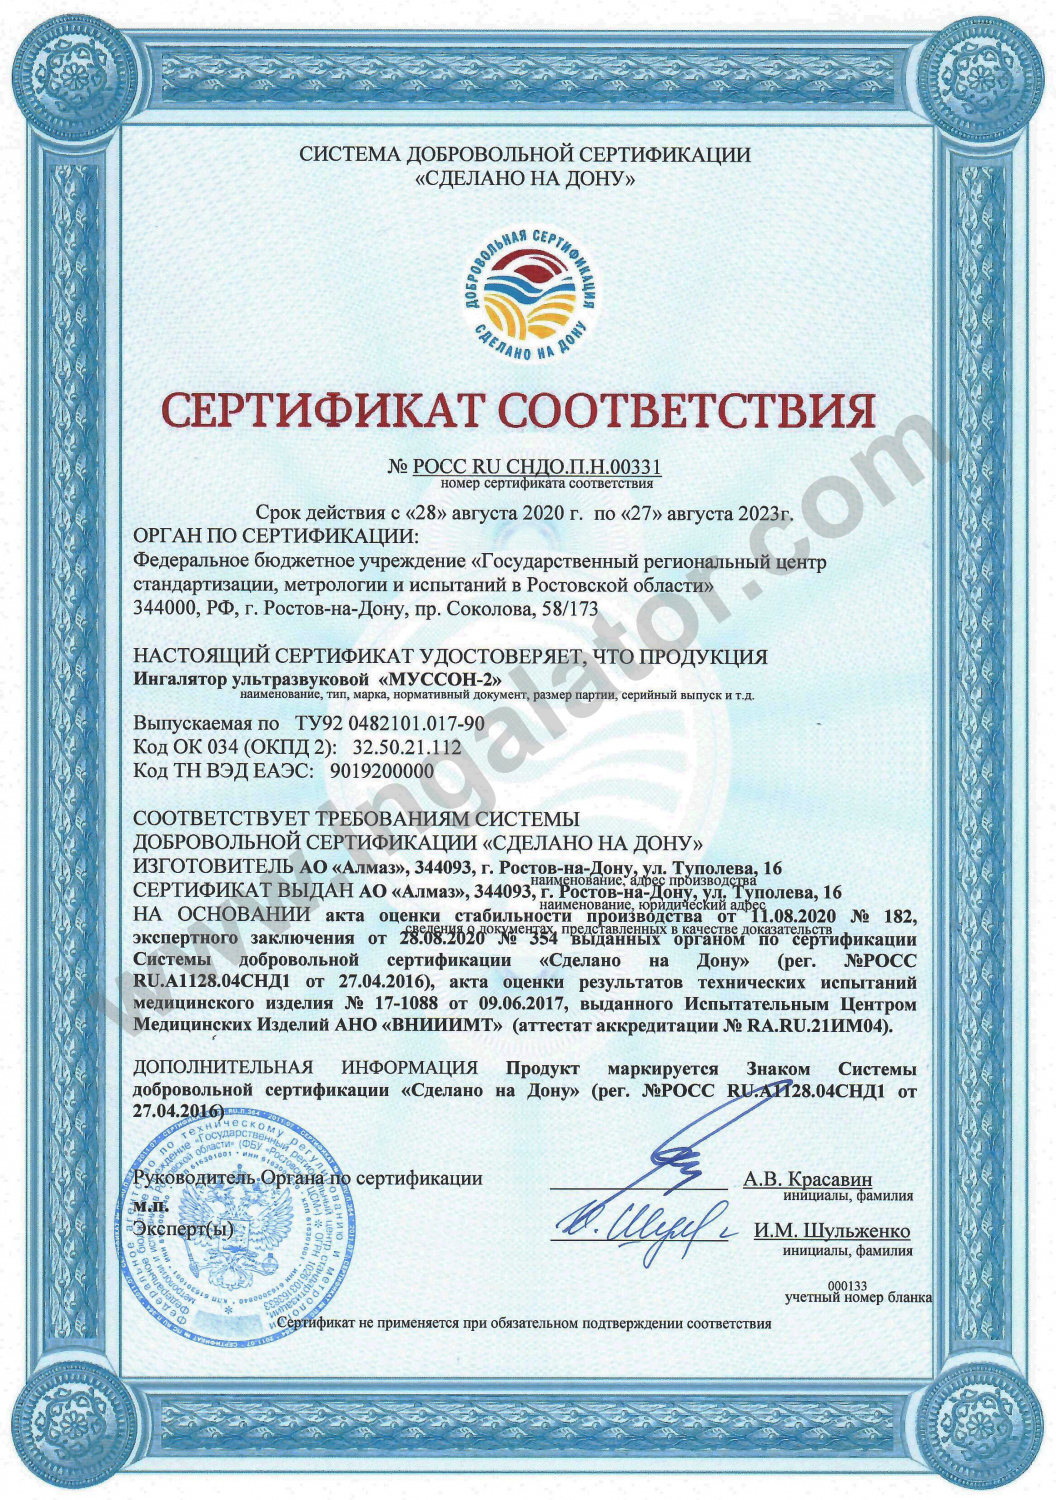 Сертификат соответствия «Муссон-2»